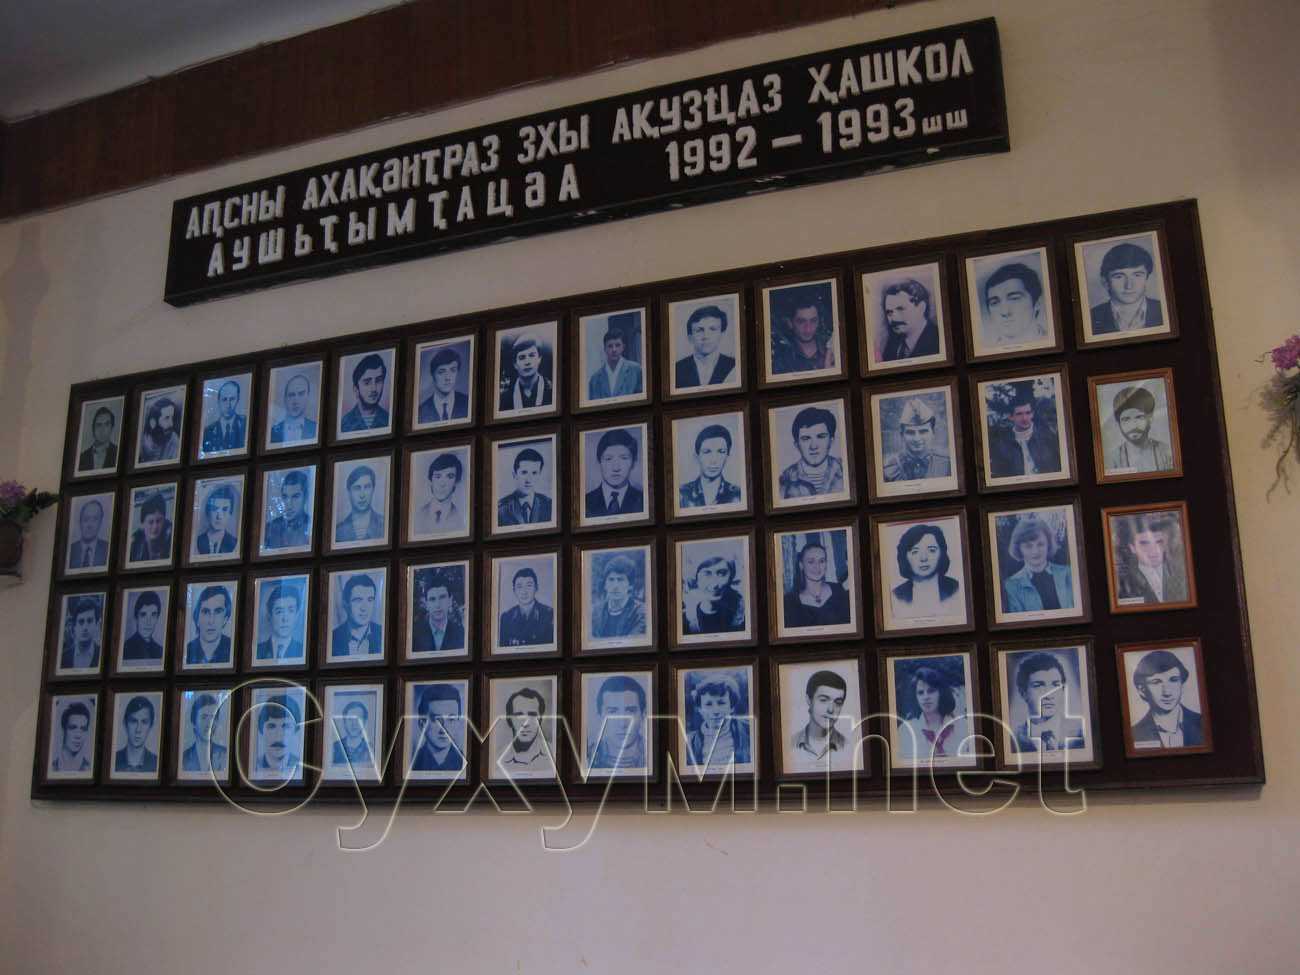 фотографии учеников, погибших в войне 1992-1993гг.